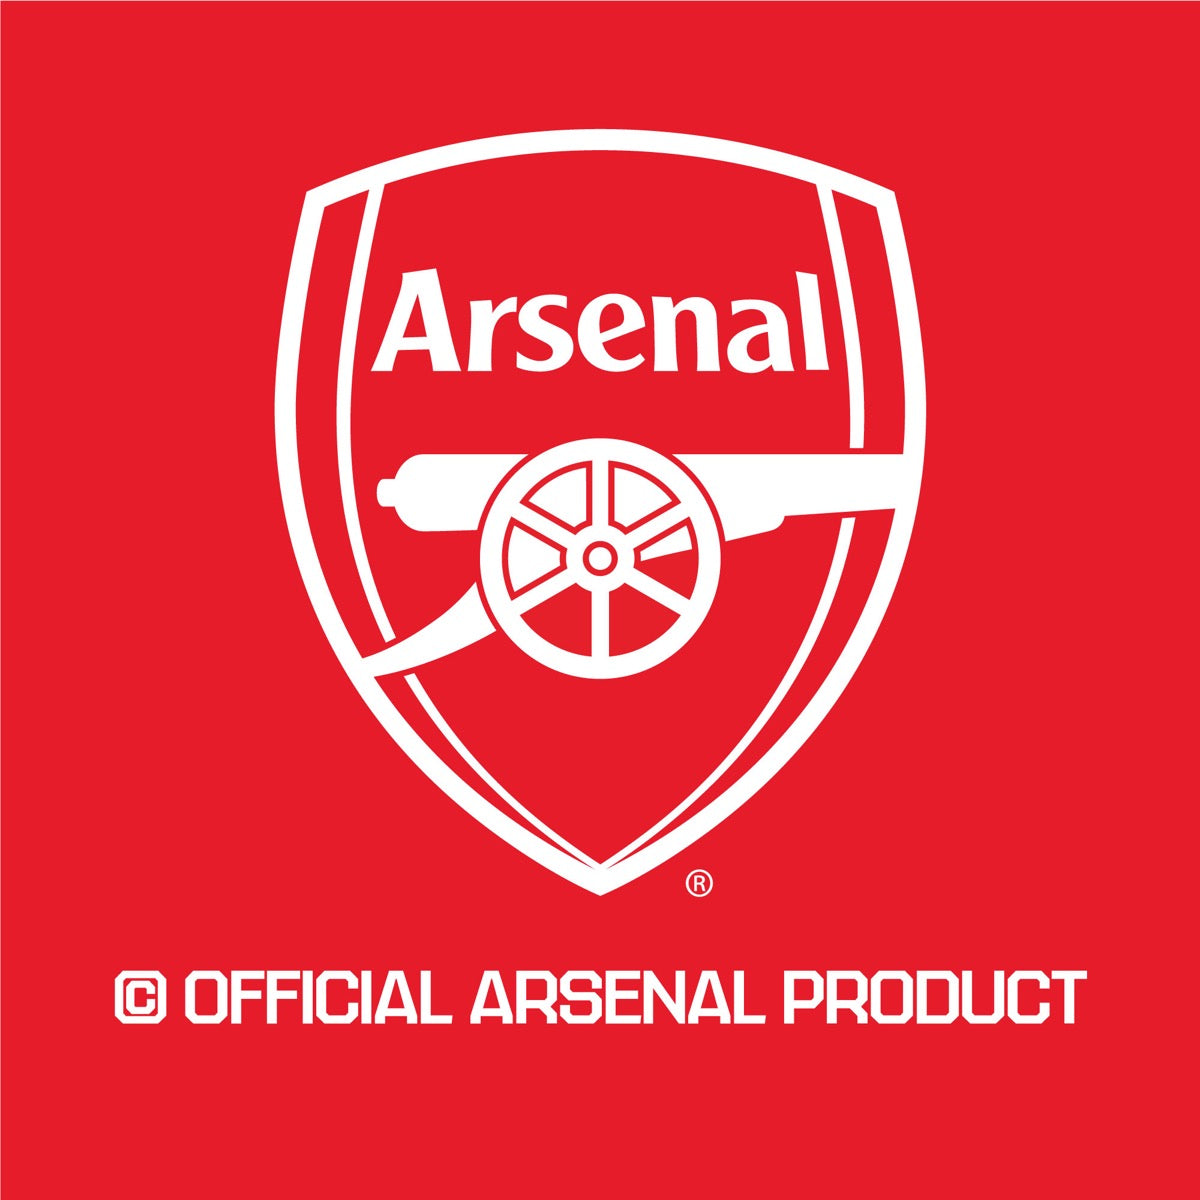 Arsenal Football Club - Gabriel Jesus 23-24 Broken Wall Sticker + Gunners Decal Set